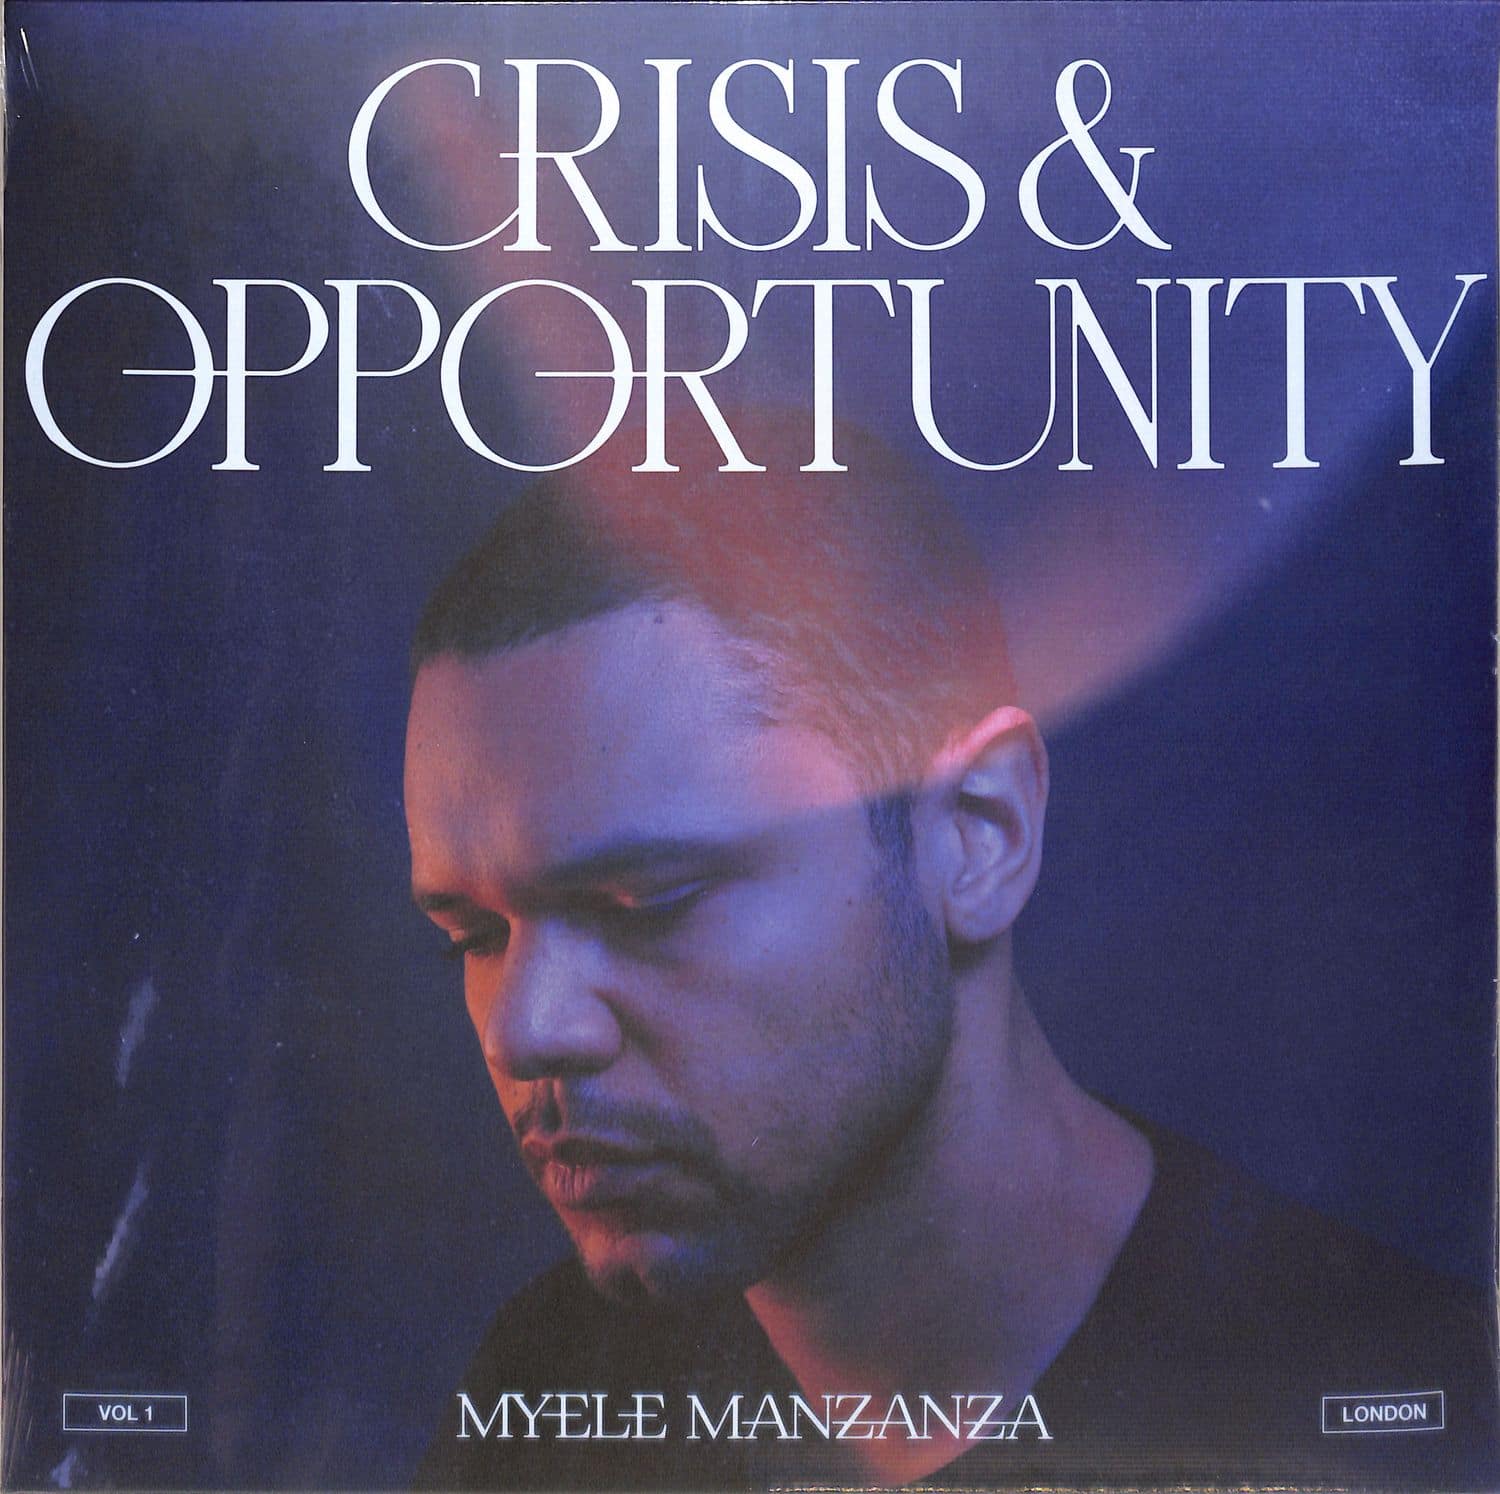 Myele Manzanza - CRISIS & OPPORTUNITY, VOL.1 - LONDON 